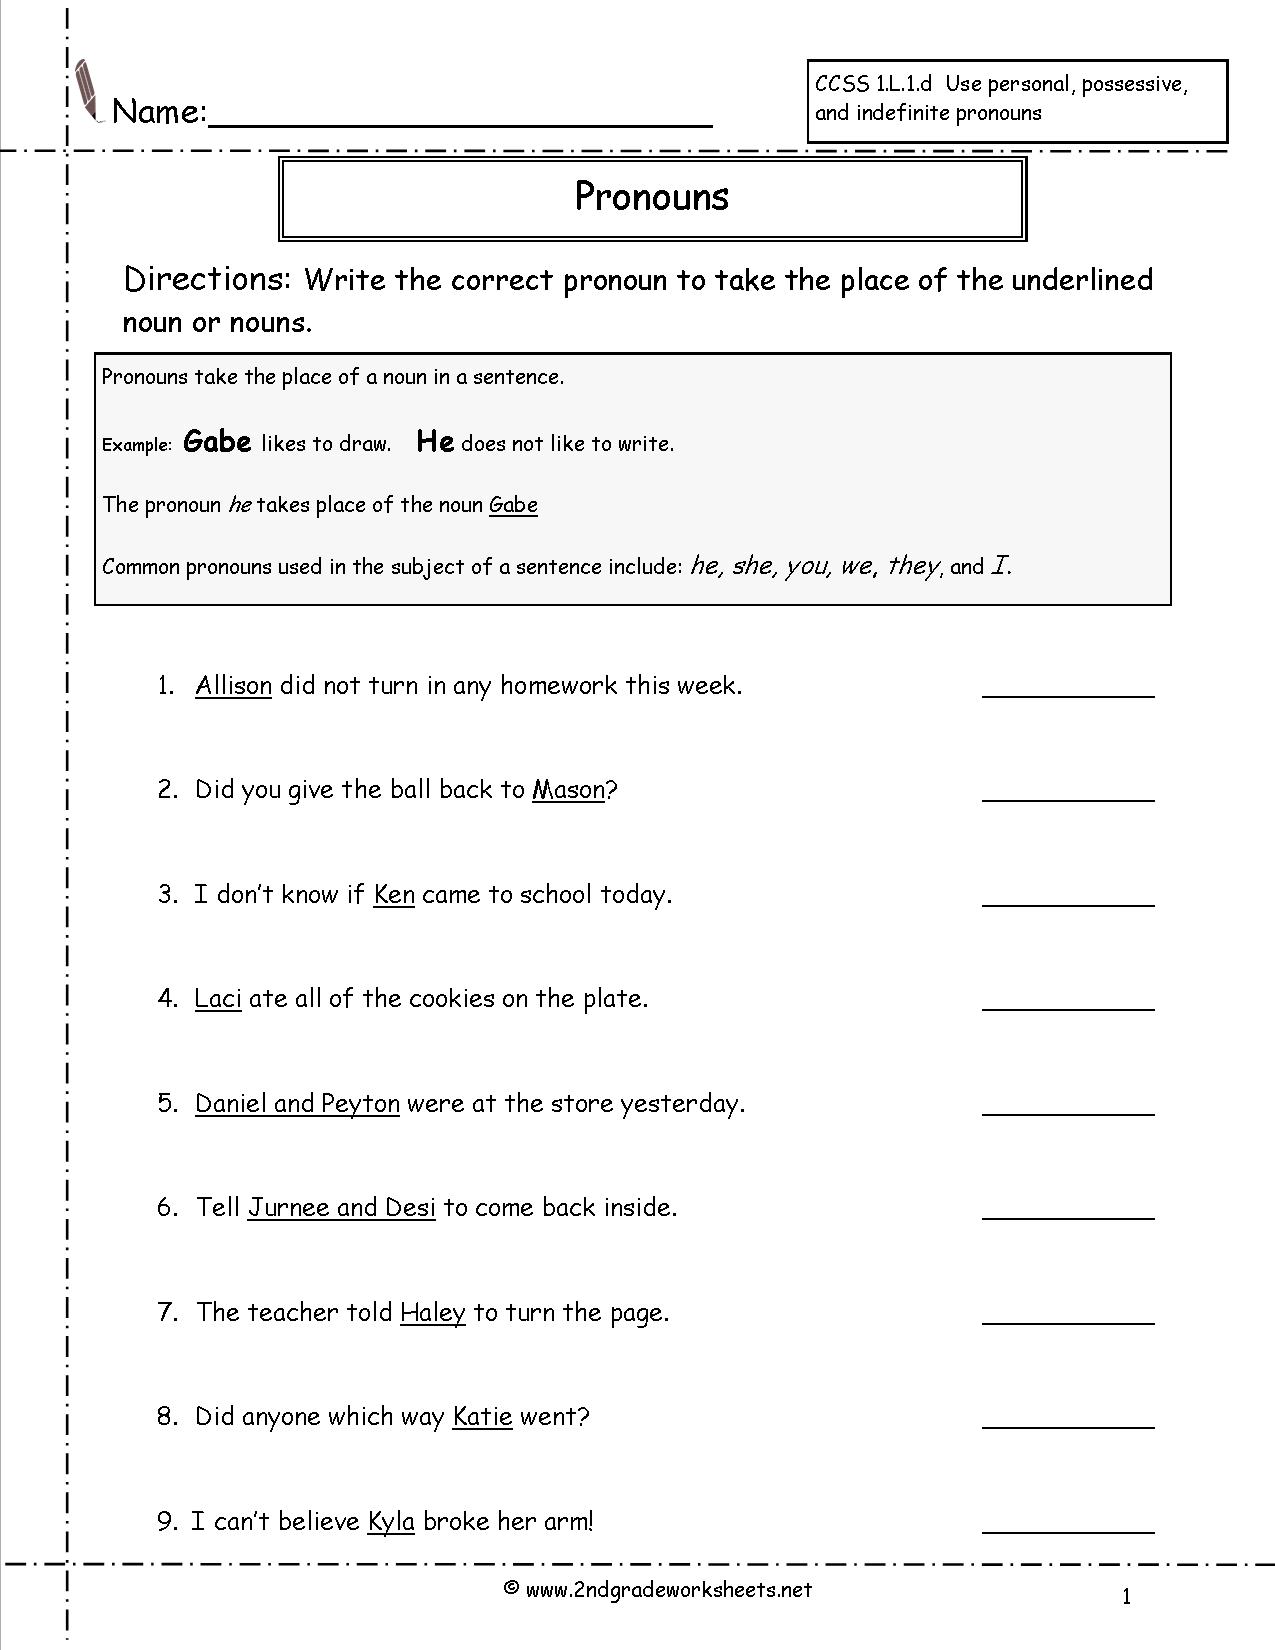 2nd Grade Pronoun Worksheet Image